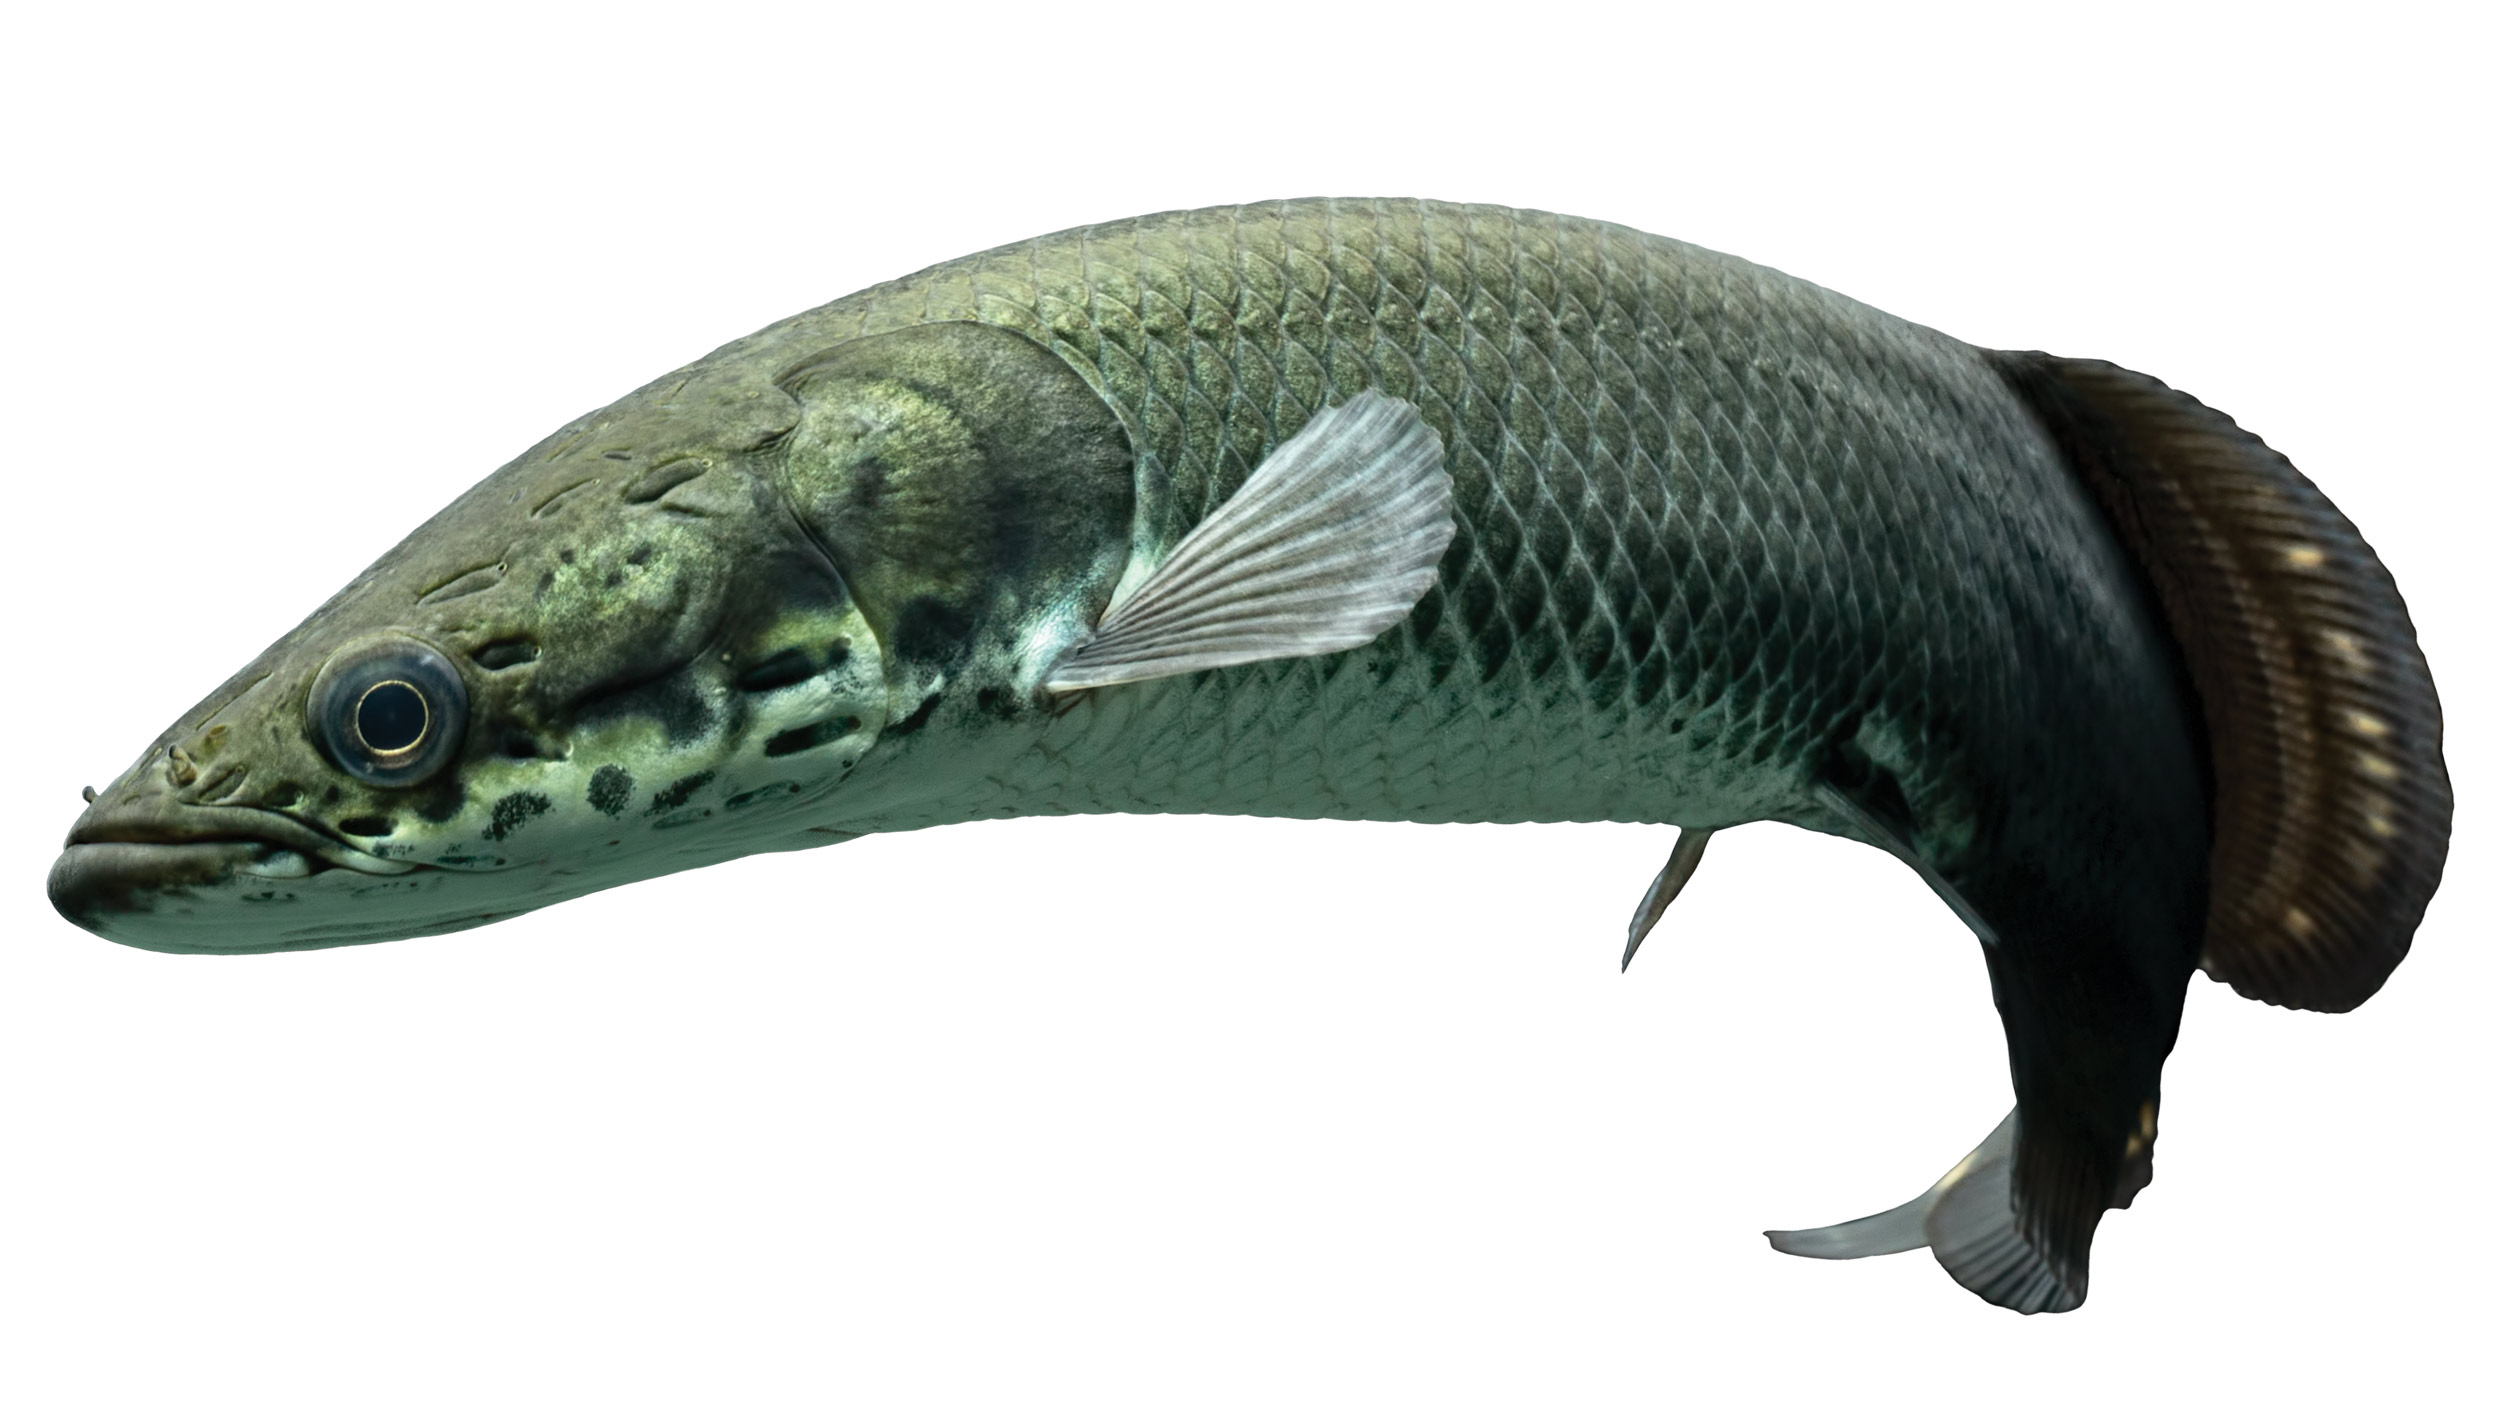 Amazonian freshwater fish, Arapaima gigas